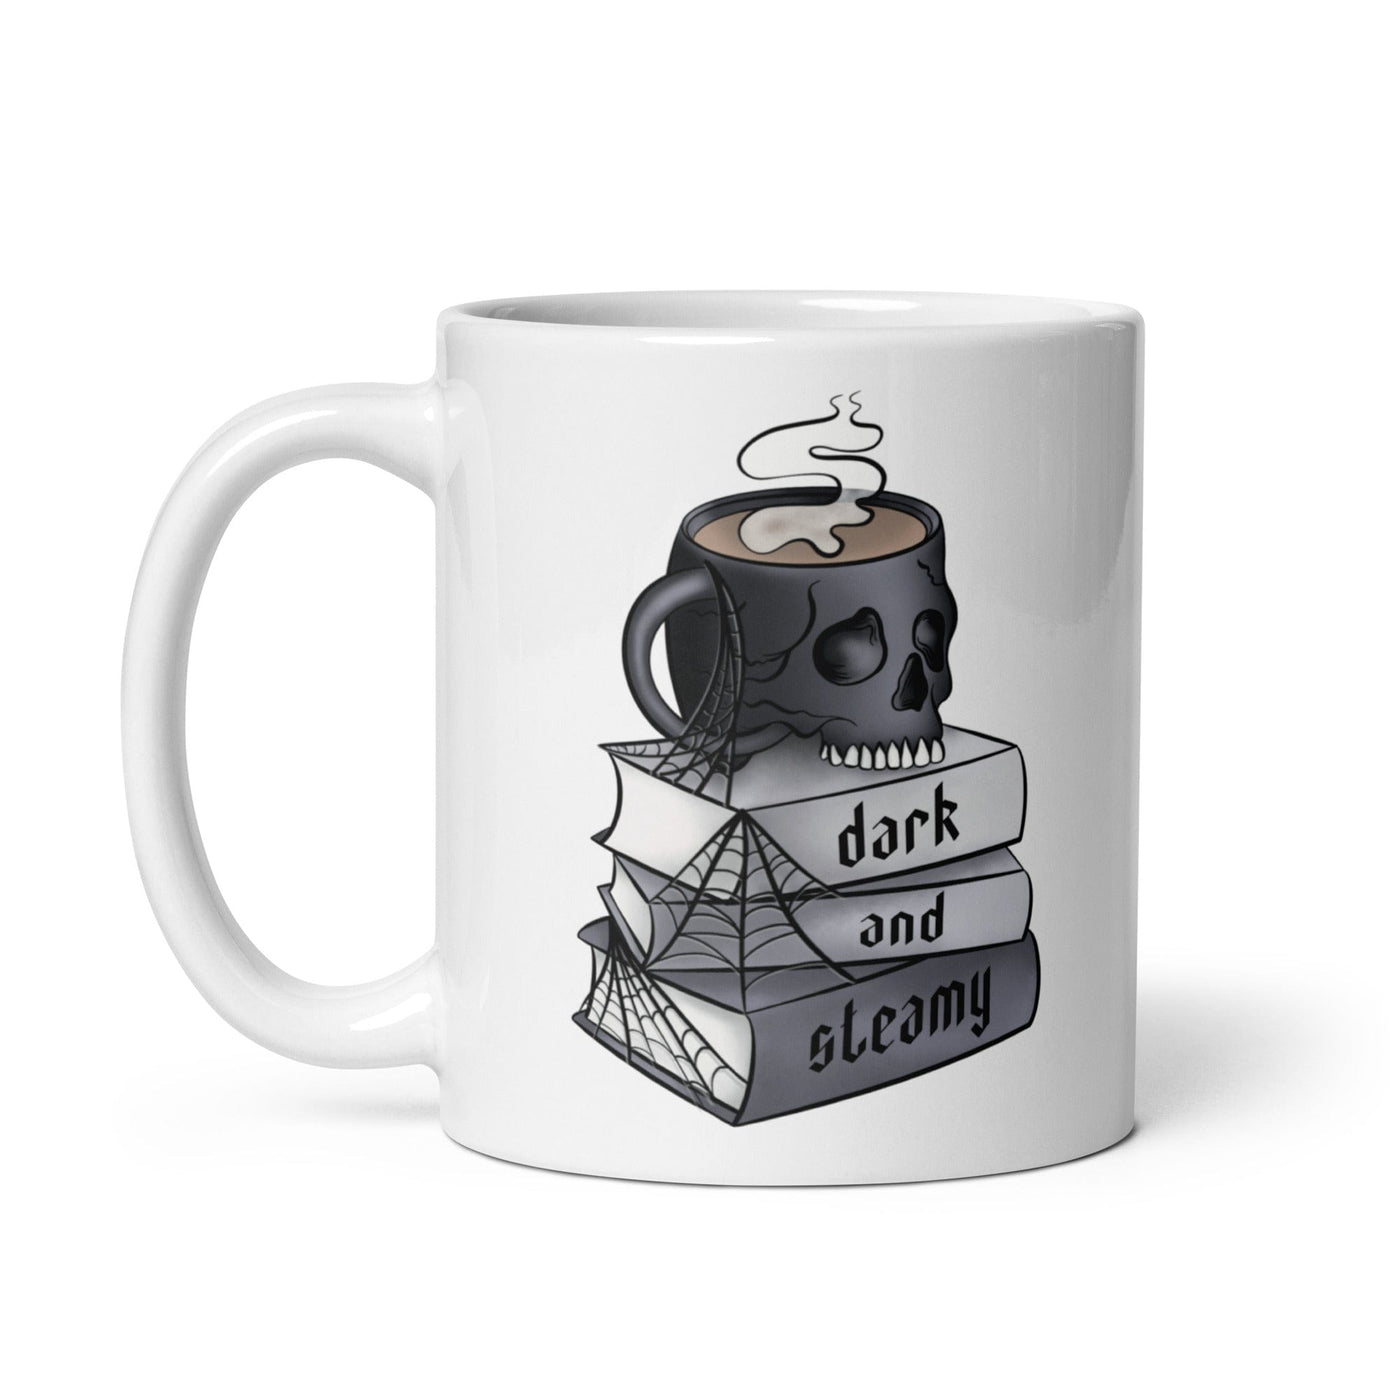 Lit Haven Booktique Dark and Steamy Mug